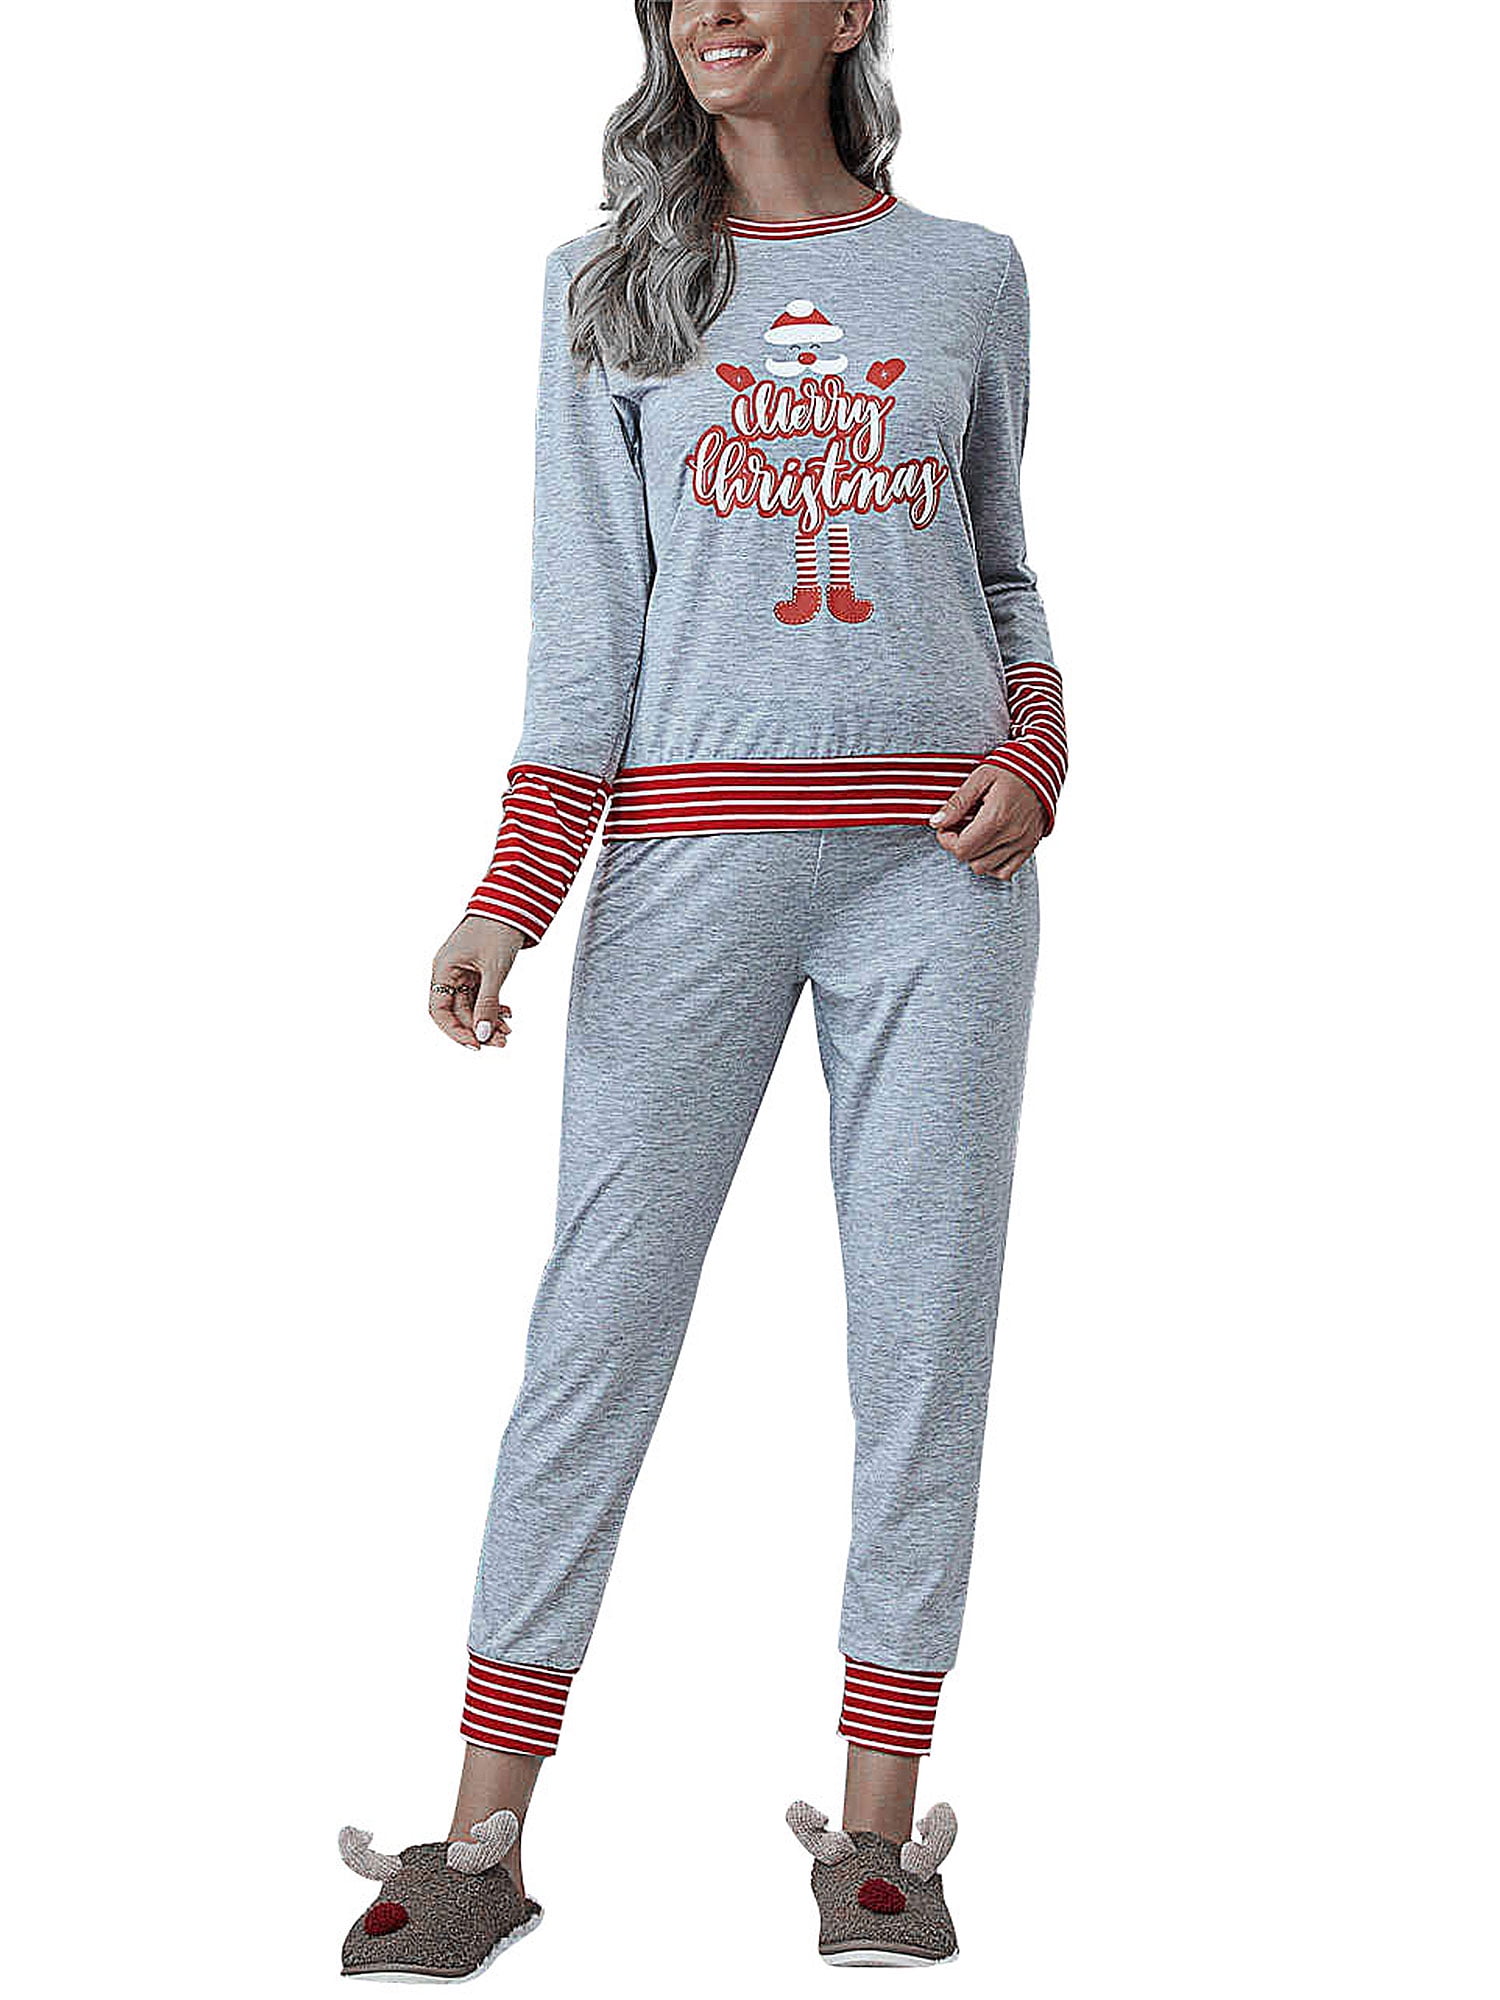 Avamo Plus Size Christmas Pajamas Set Womens Long Sleeve Printed ...